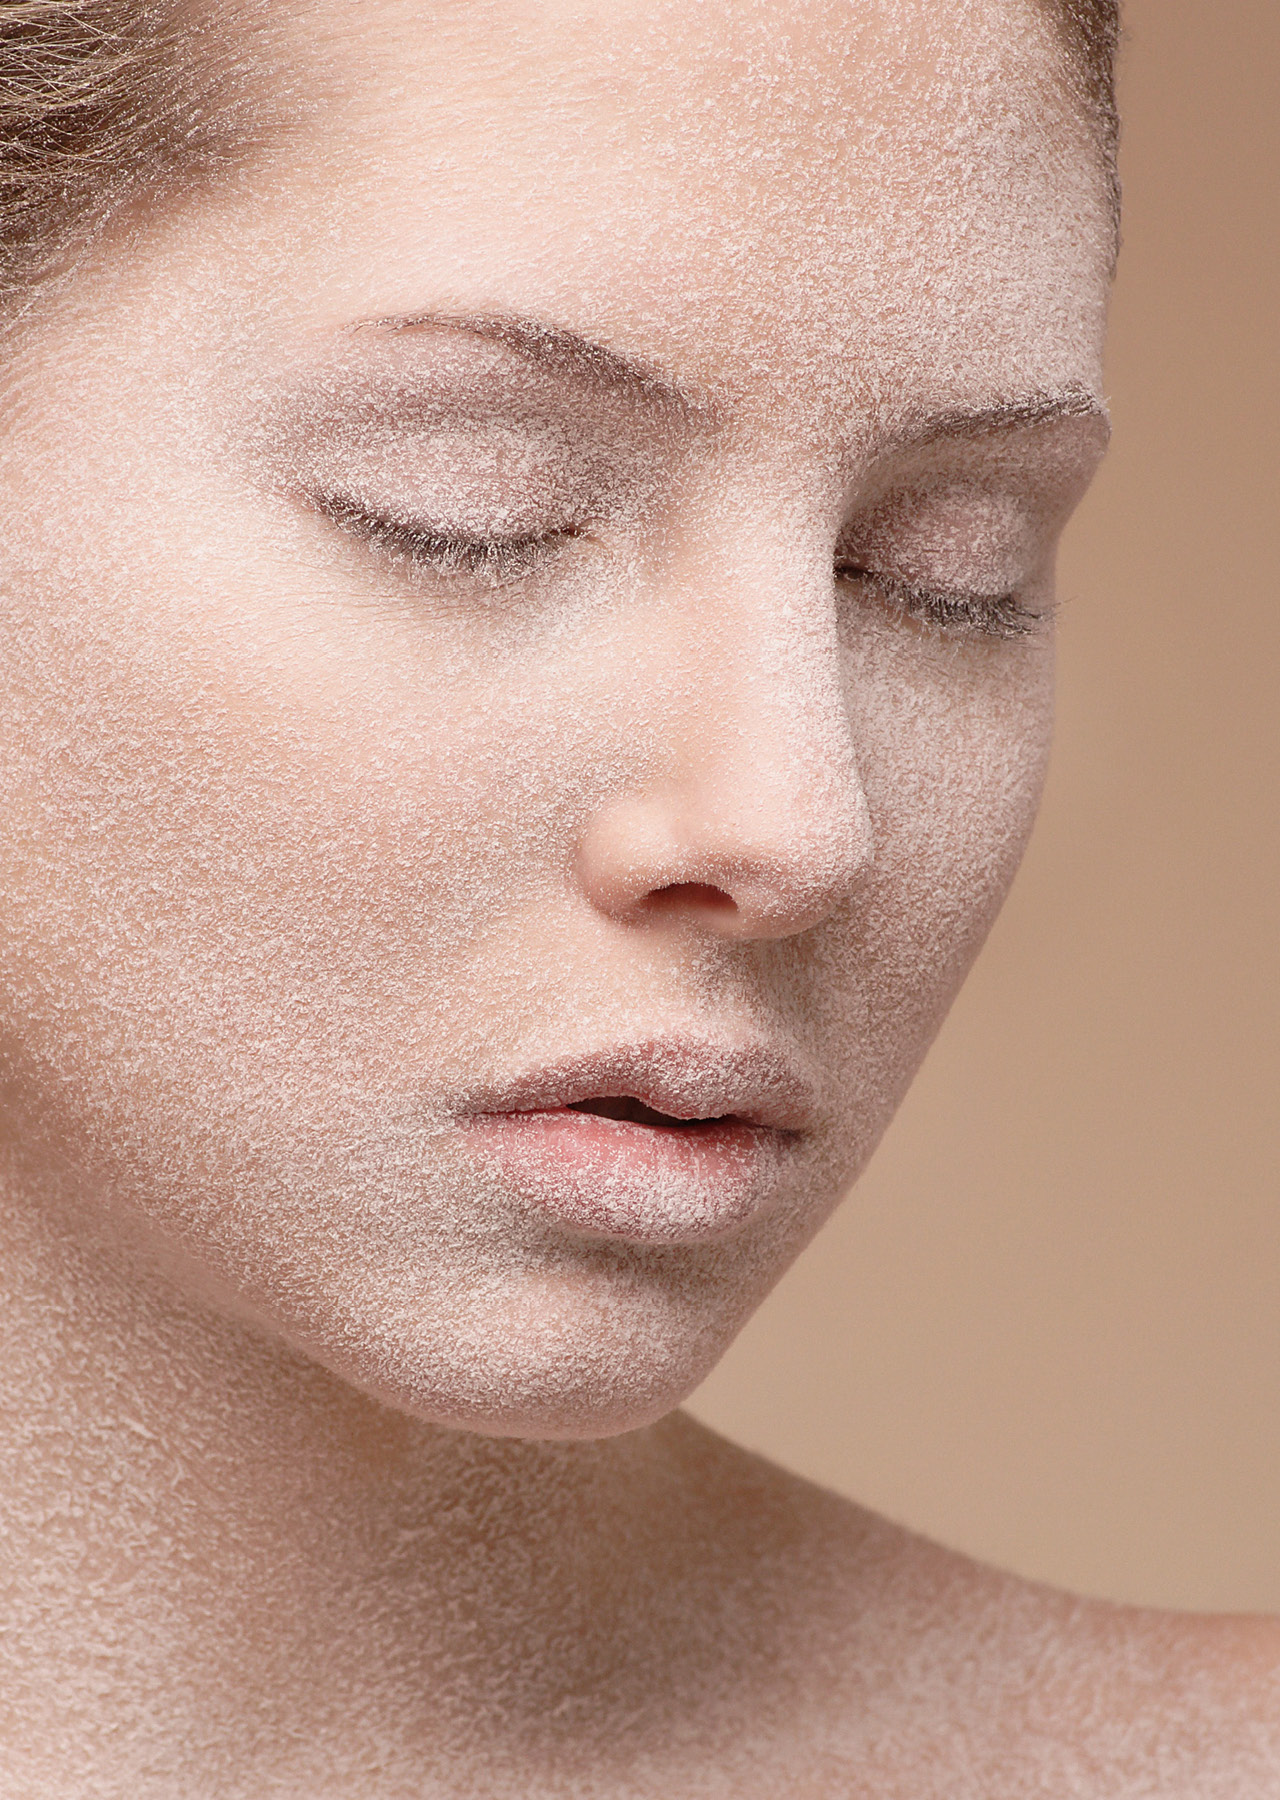 Как увлажнять кожу лица - увлажнение в домашних условиях